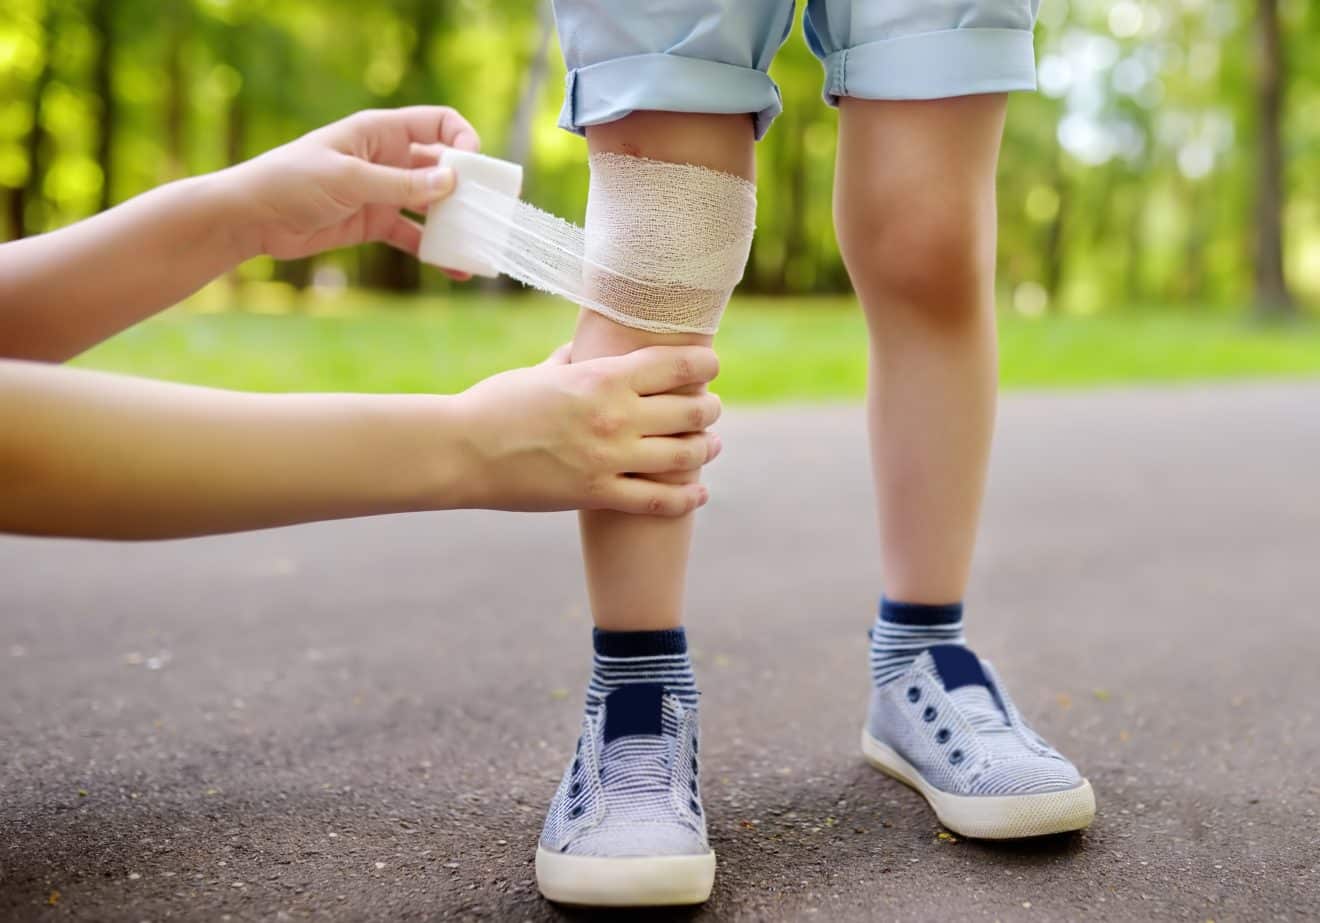 פציעות ילדים בחופשת הקיץ:  איך נזהרים, כיצד מטפלים ולמי פונים?